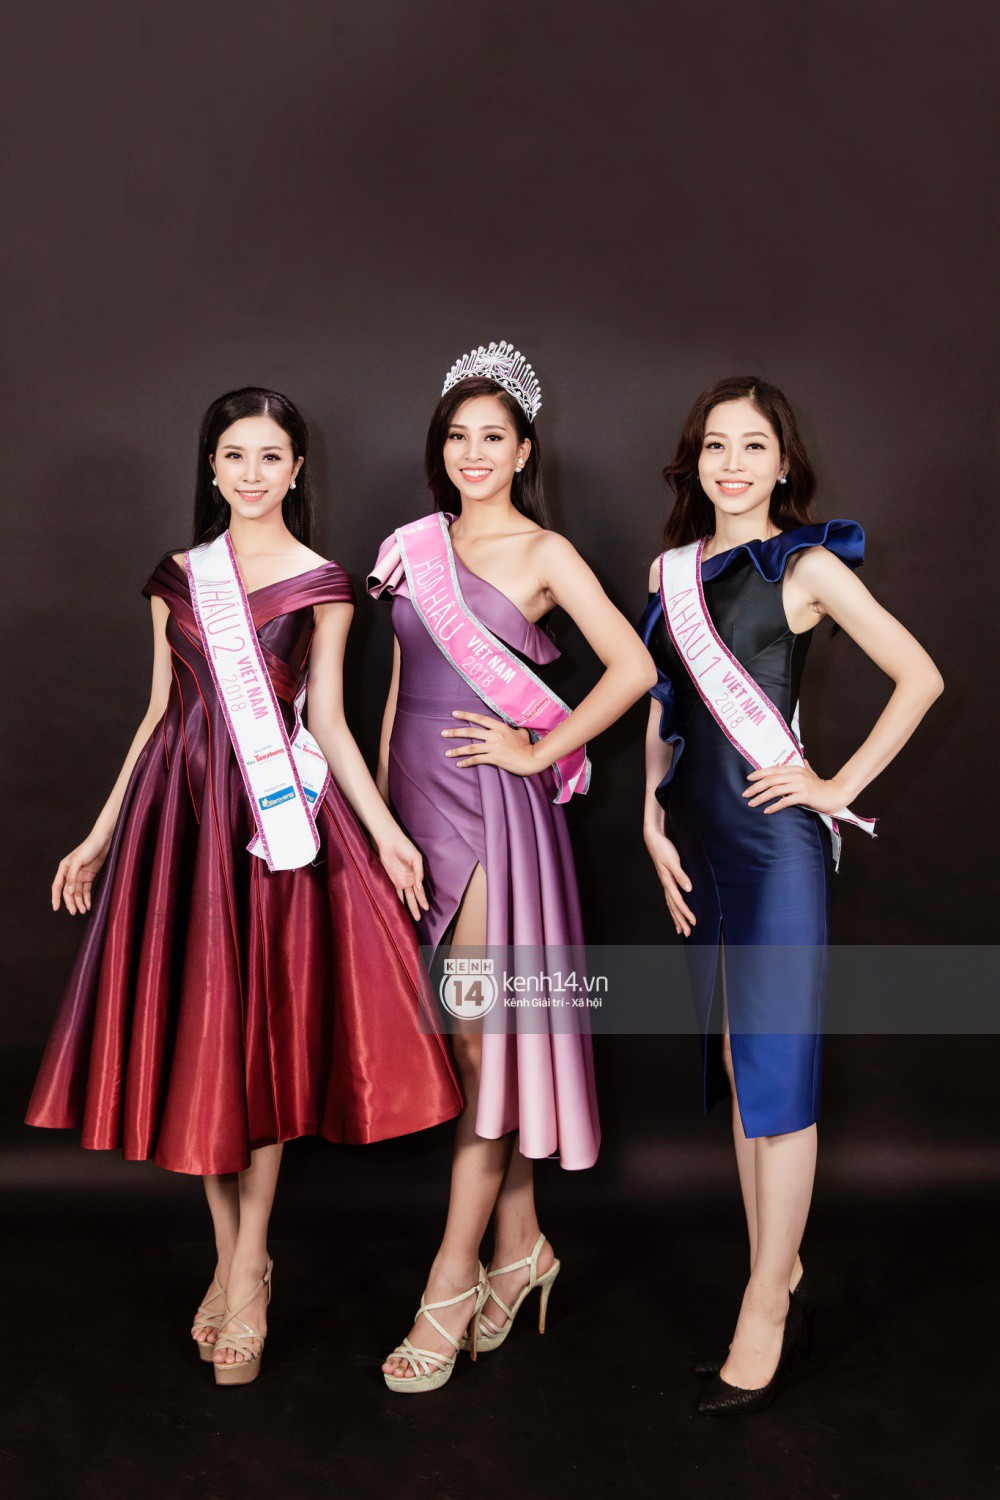 Ngắm cận vẻ đẹp của Top 3 Hoa hậu Việt Nam 2018: Mỹ nhân 2000 được khen sắc sảo, 2 nàng Á mười phân vẹn mười-3